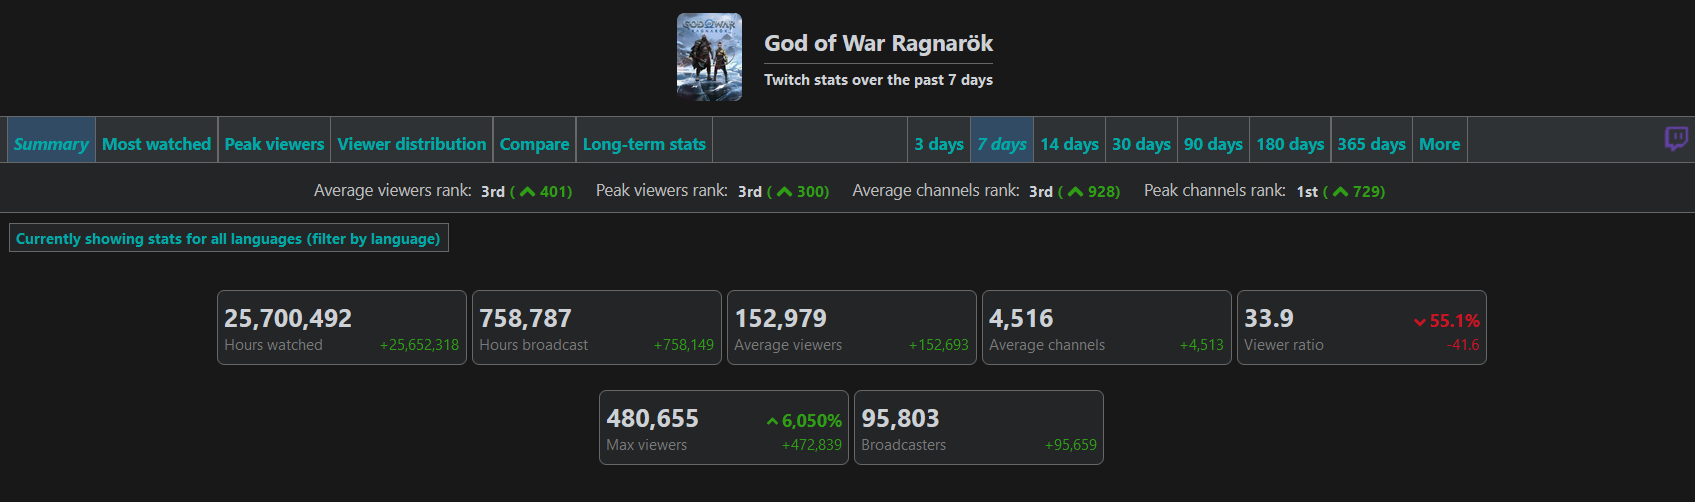 480 000 téléspectateurs et 22 millions d'heures de visionnage : Les statistiques de God of War Ragnarok sur Twitch montrent l'intérêt des fans pour le jeu.-2